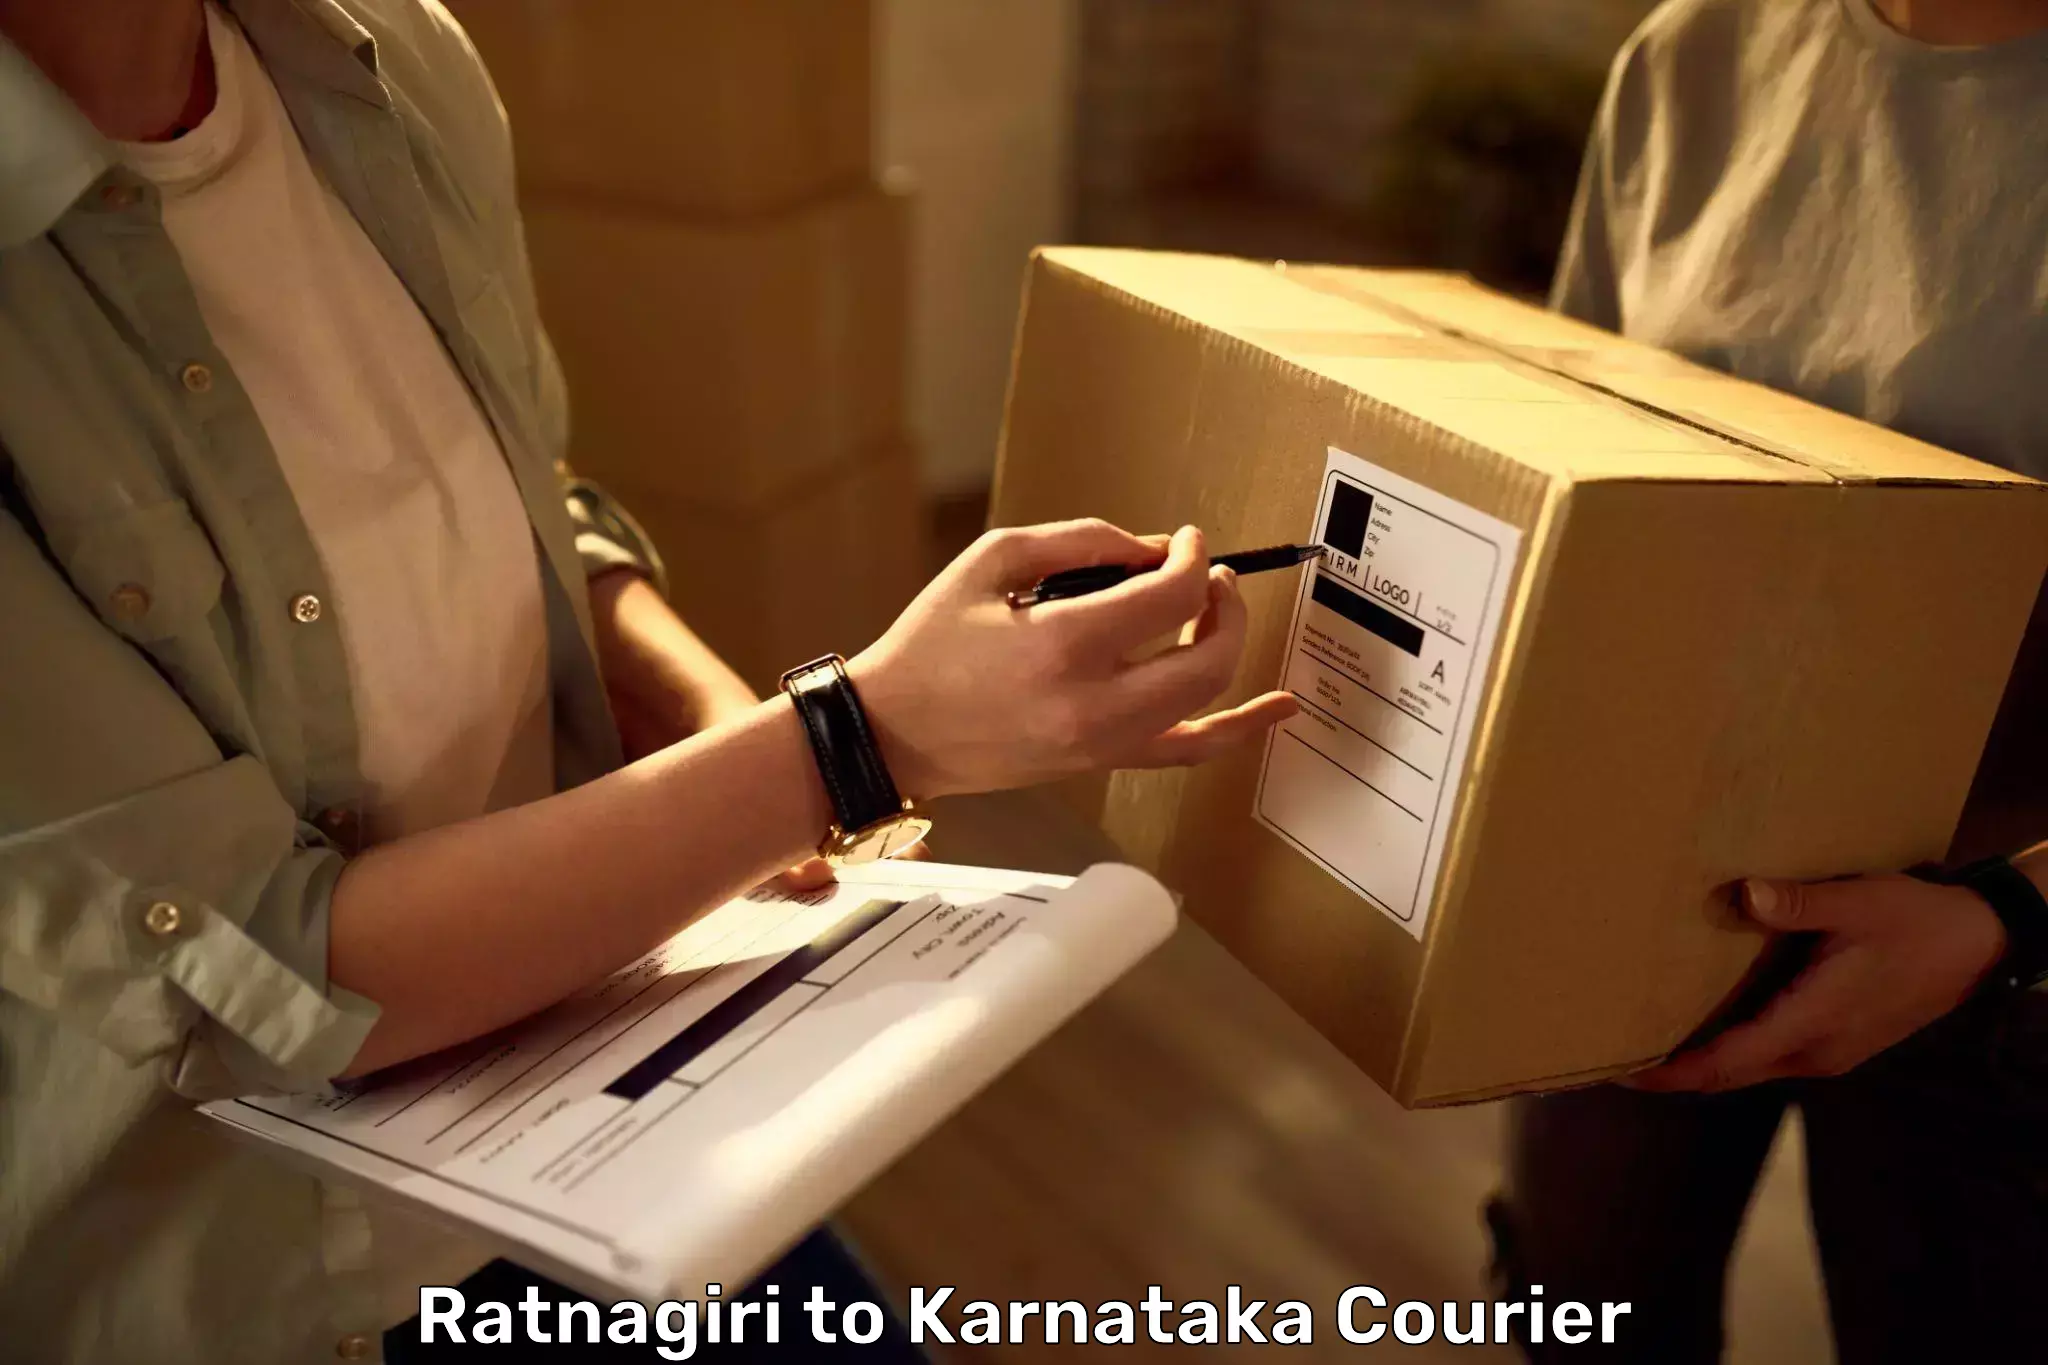 Baggage transport network Ratnagiri to Karnataka